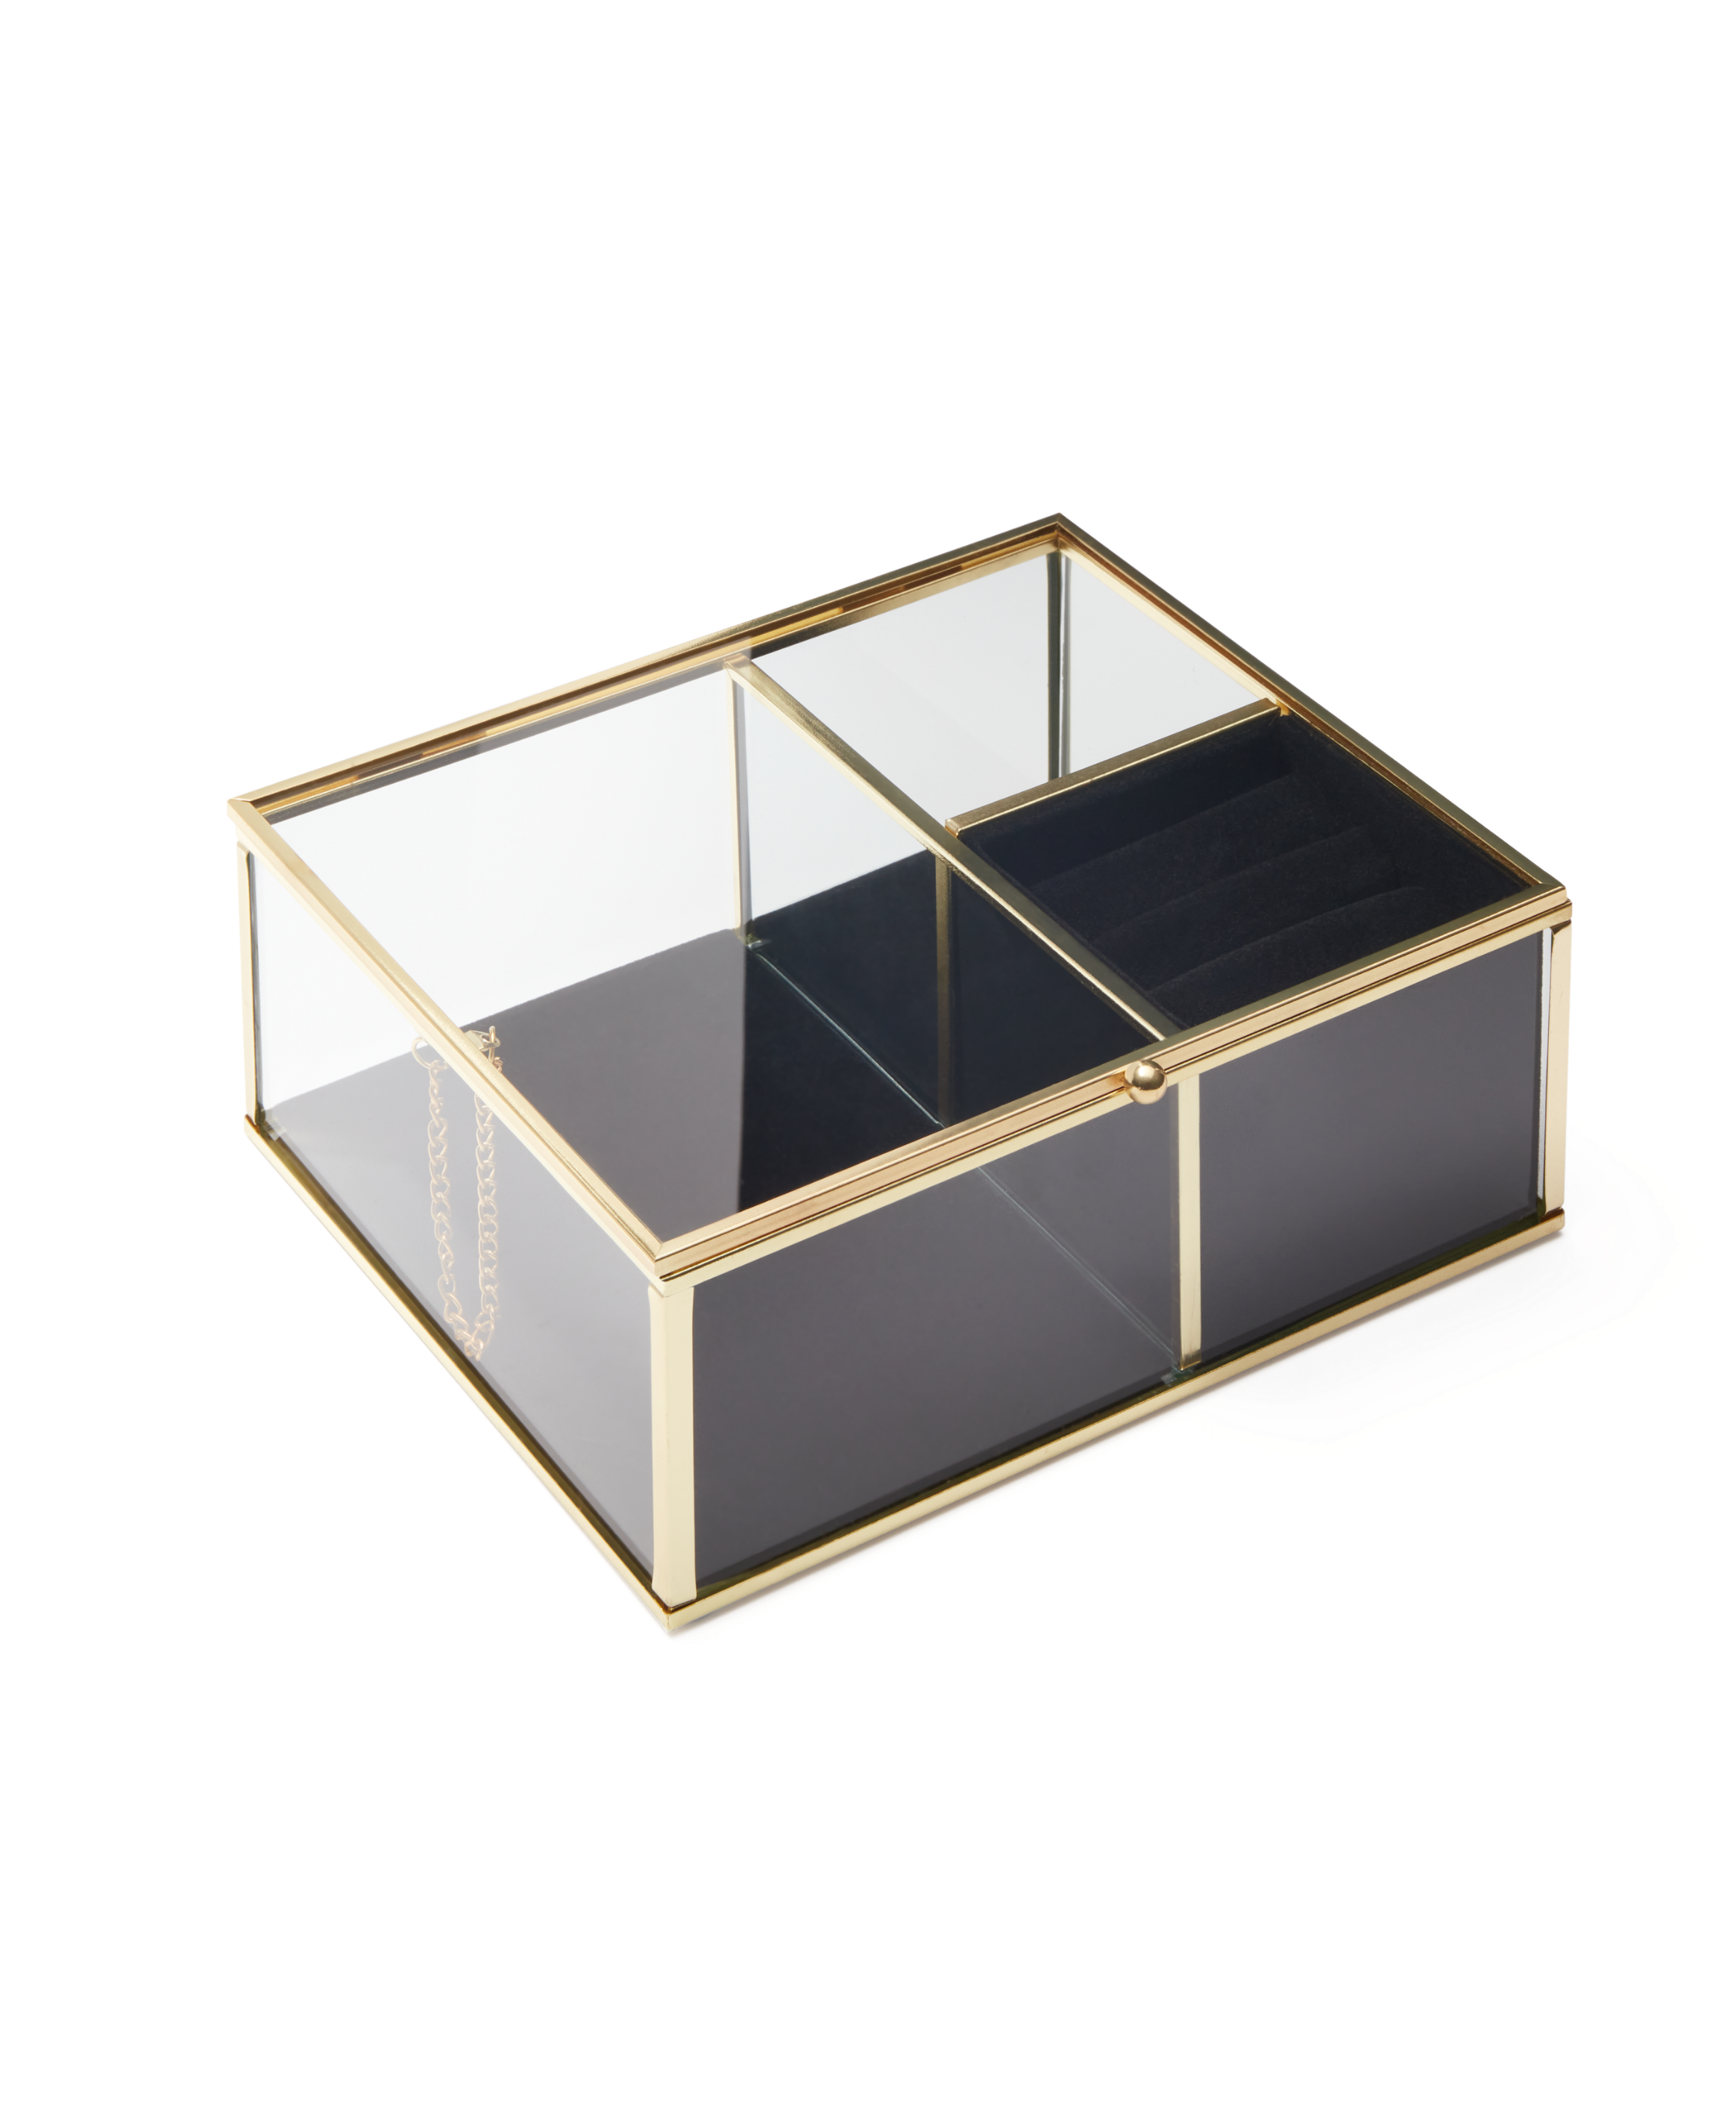 Szklana szkatułka do biżuterii ze złotym okuciem, kolor złoty, transparentny, 20 x 17 x 8,4 cm